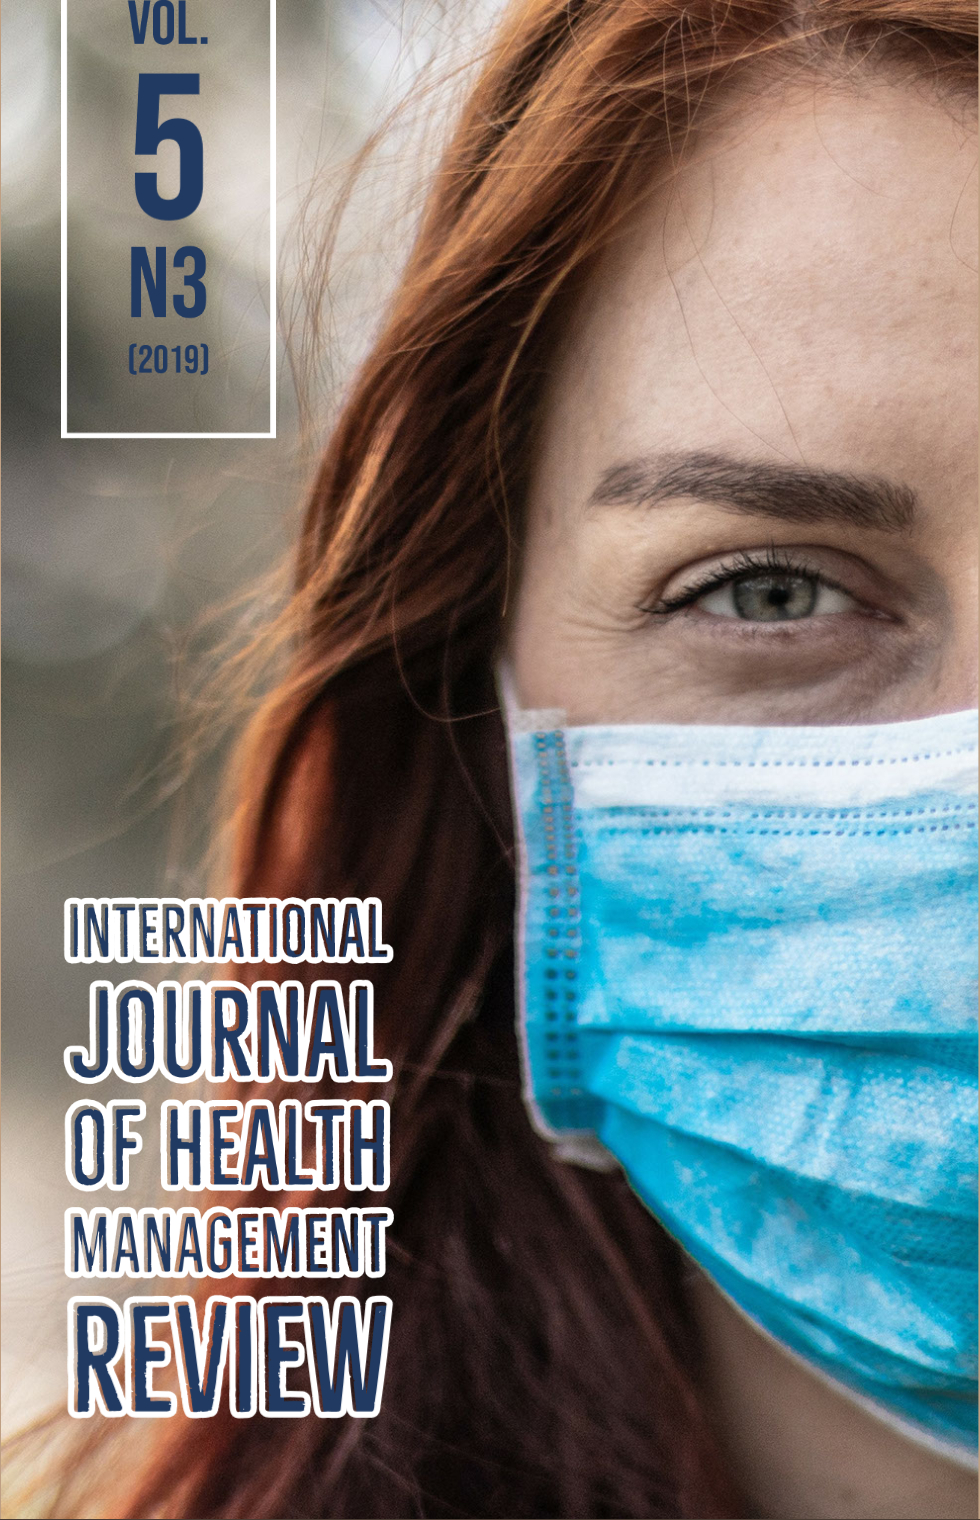 Acolhimento humanizado no cuidado pré natal as gestantes da ESF |  International Journal of Health Management Review